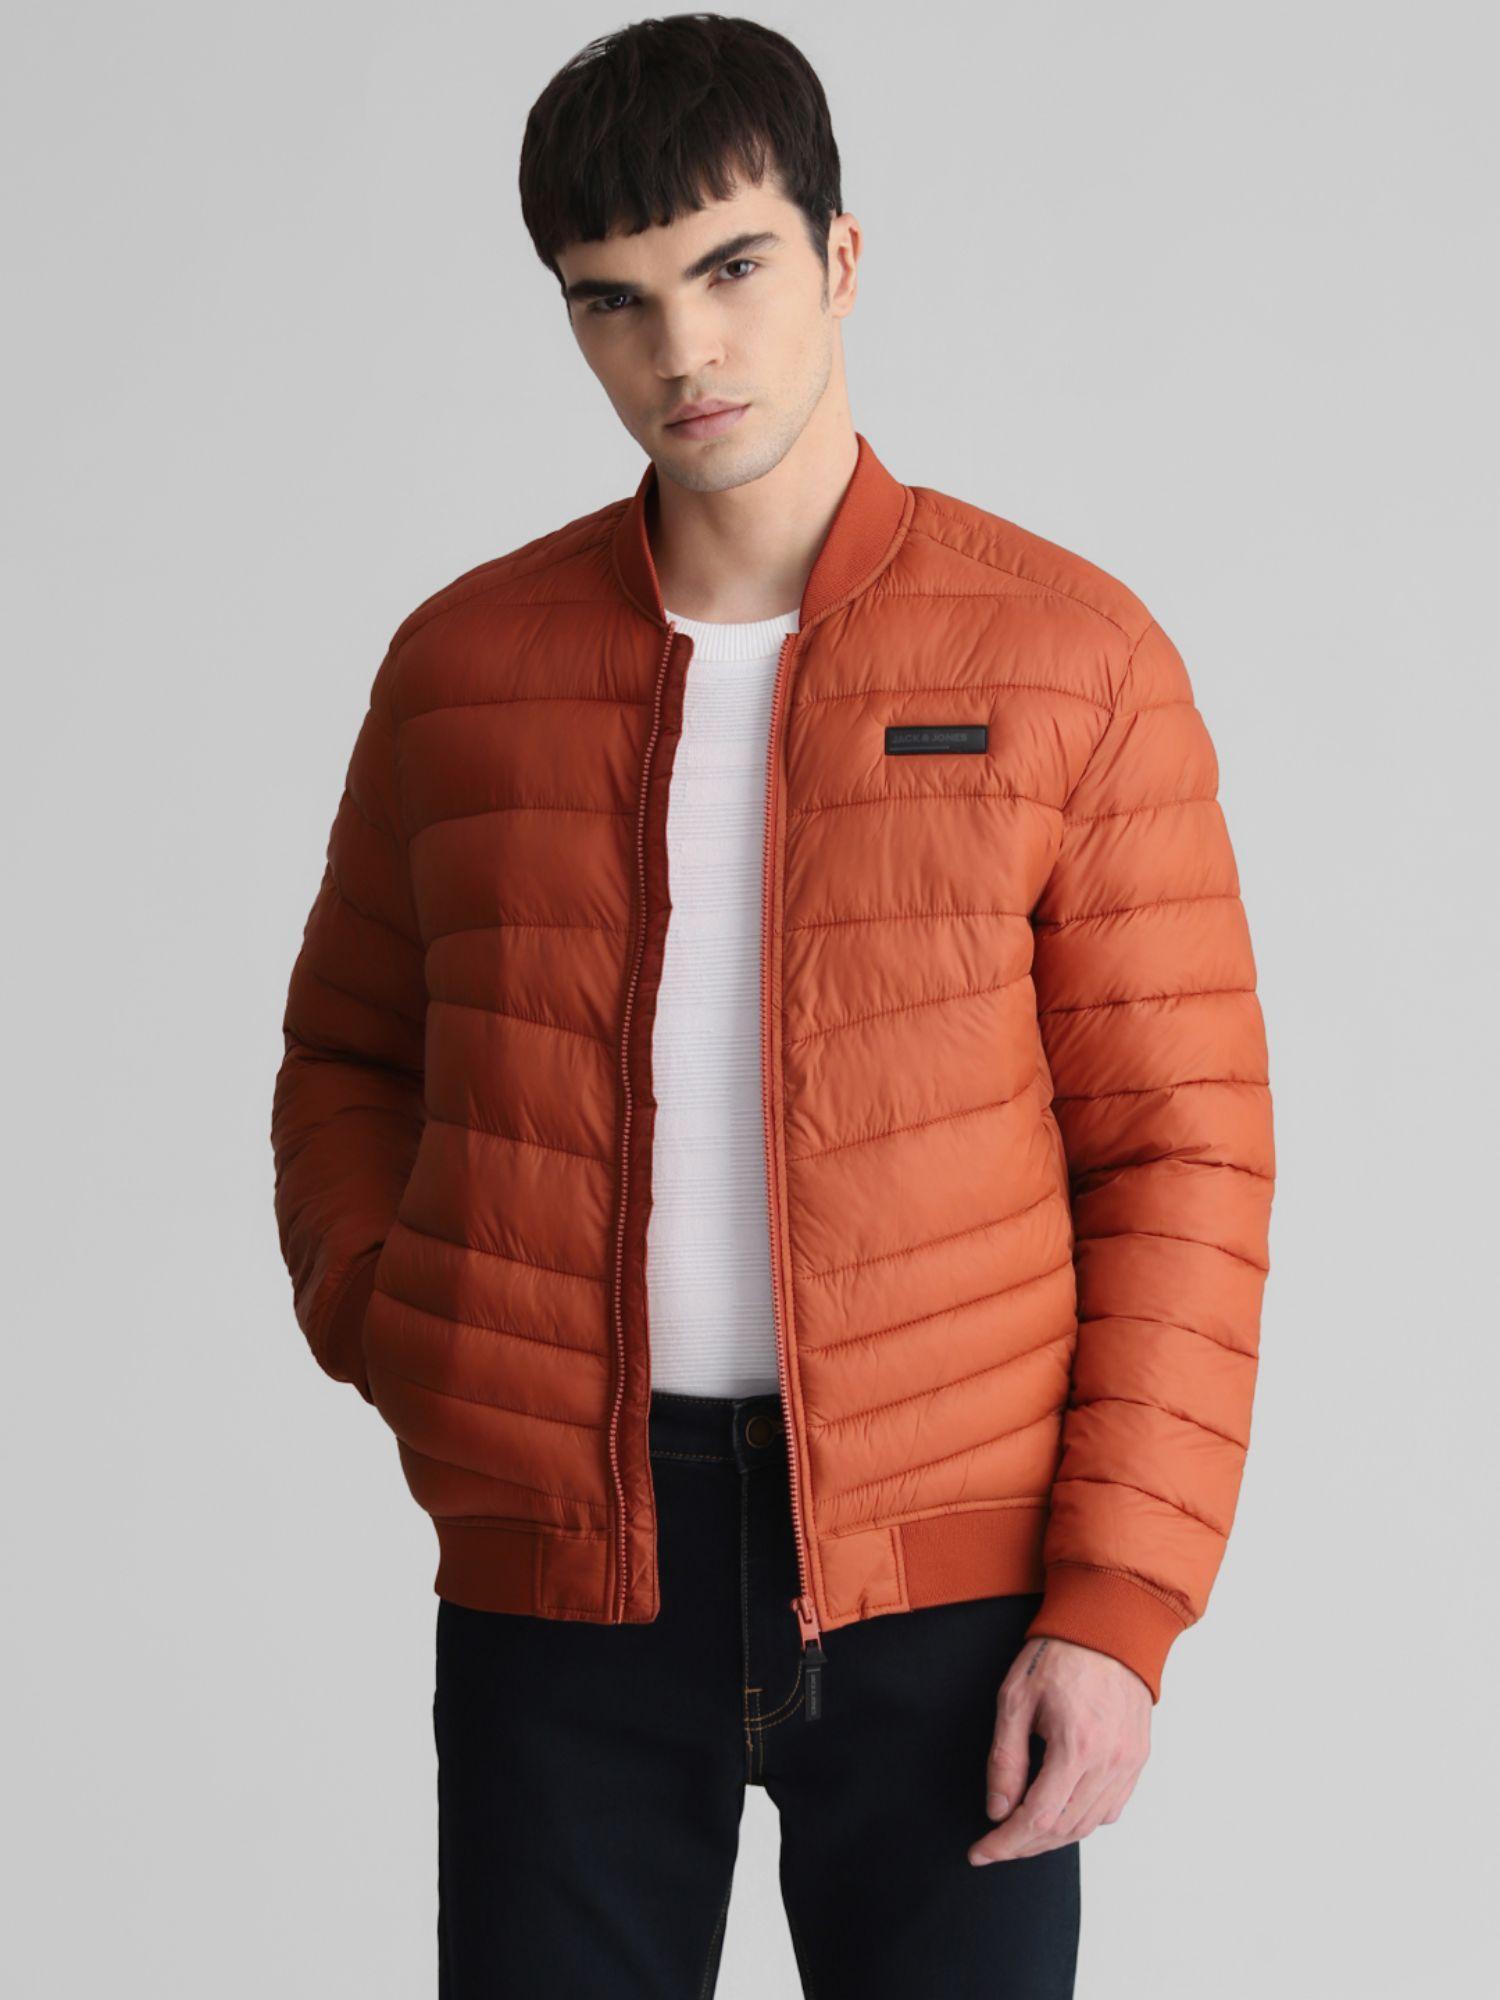 men solid orange jacket